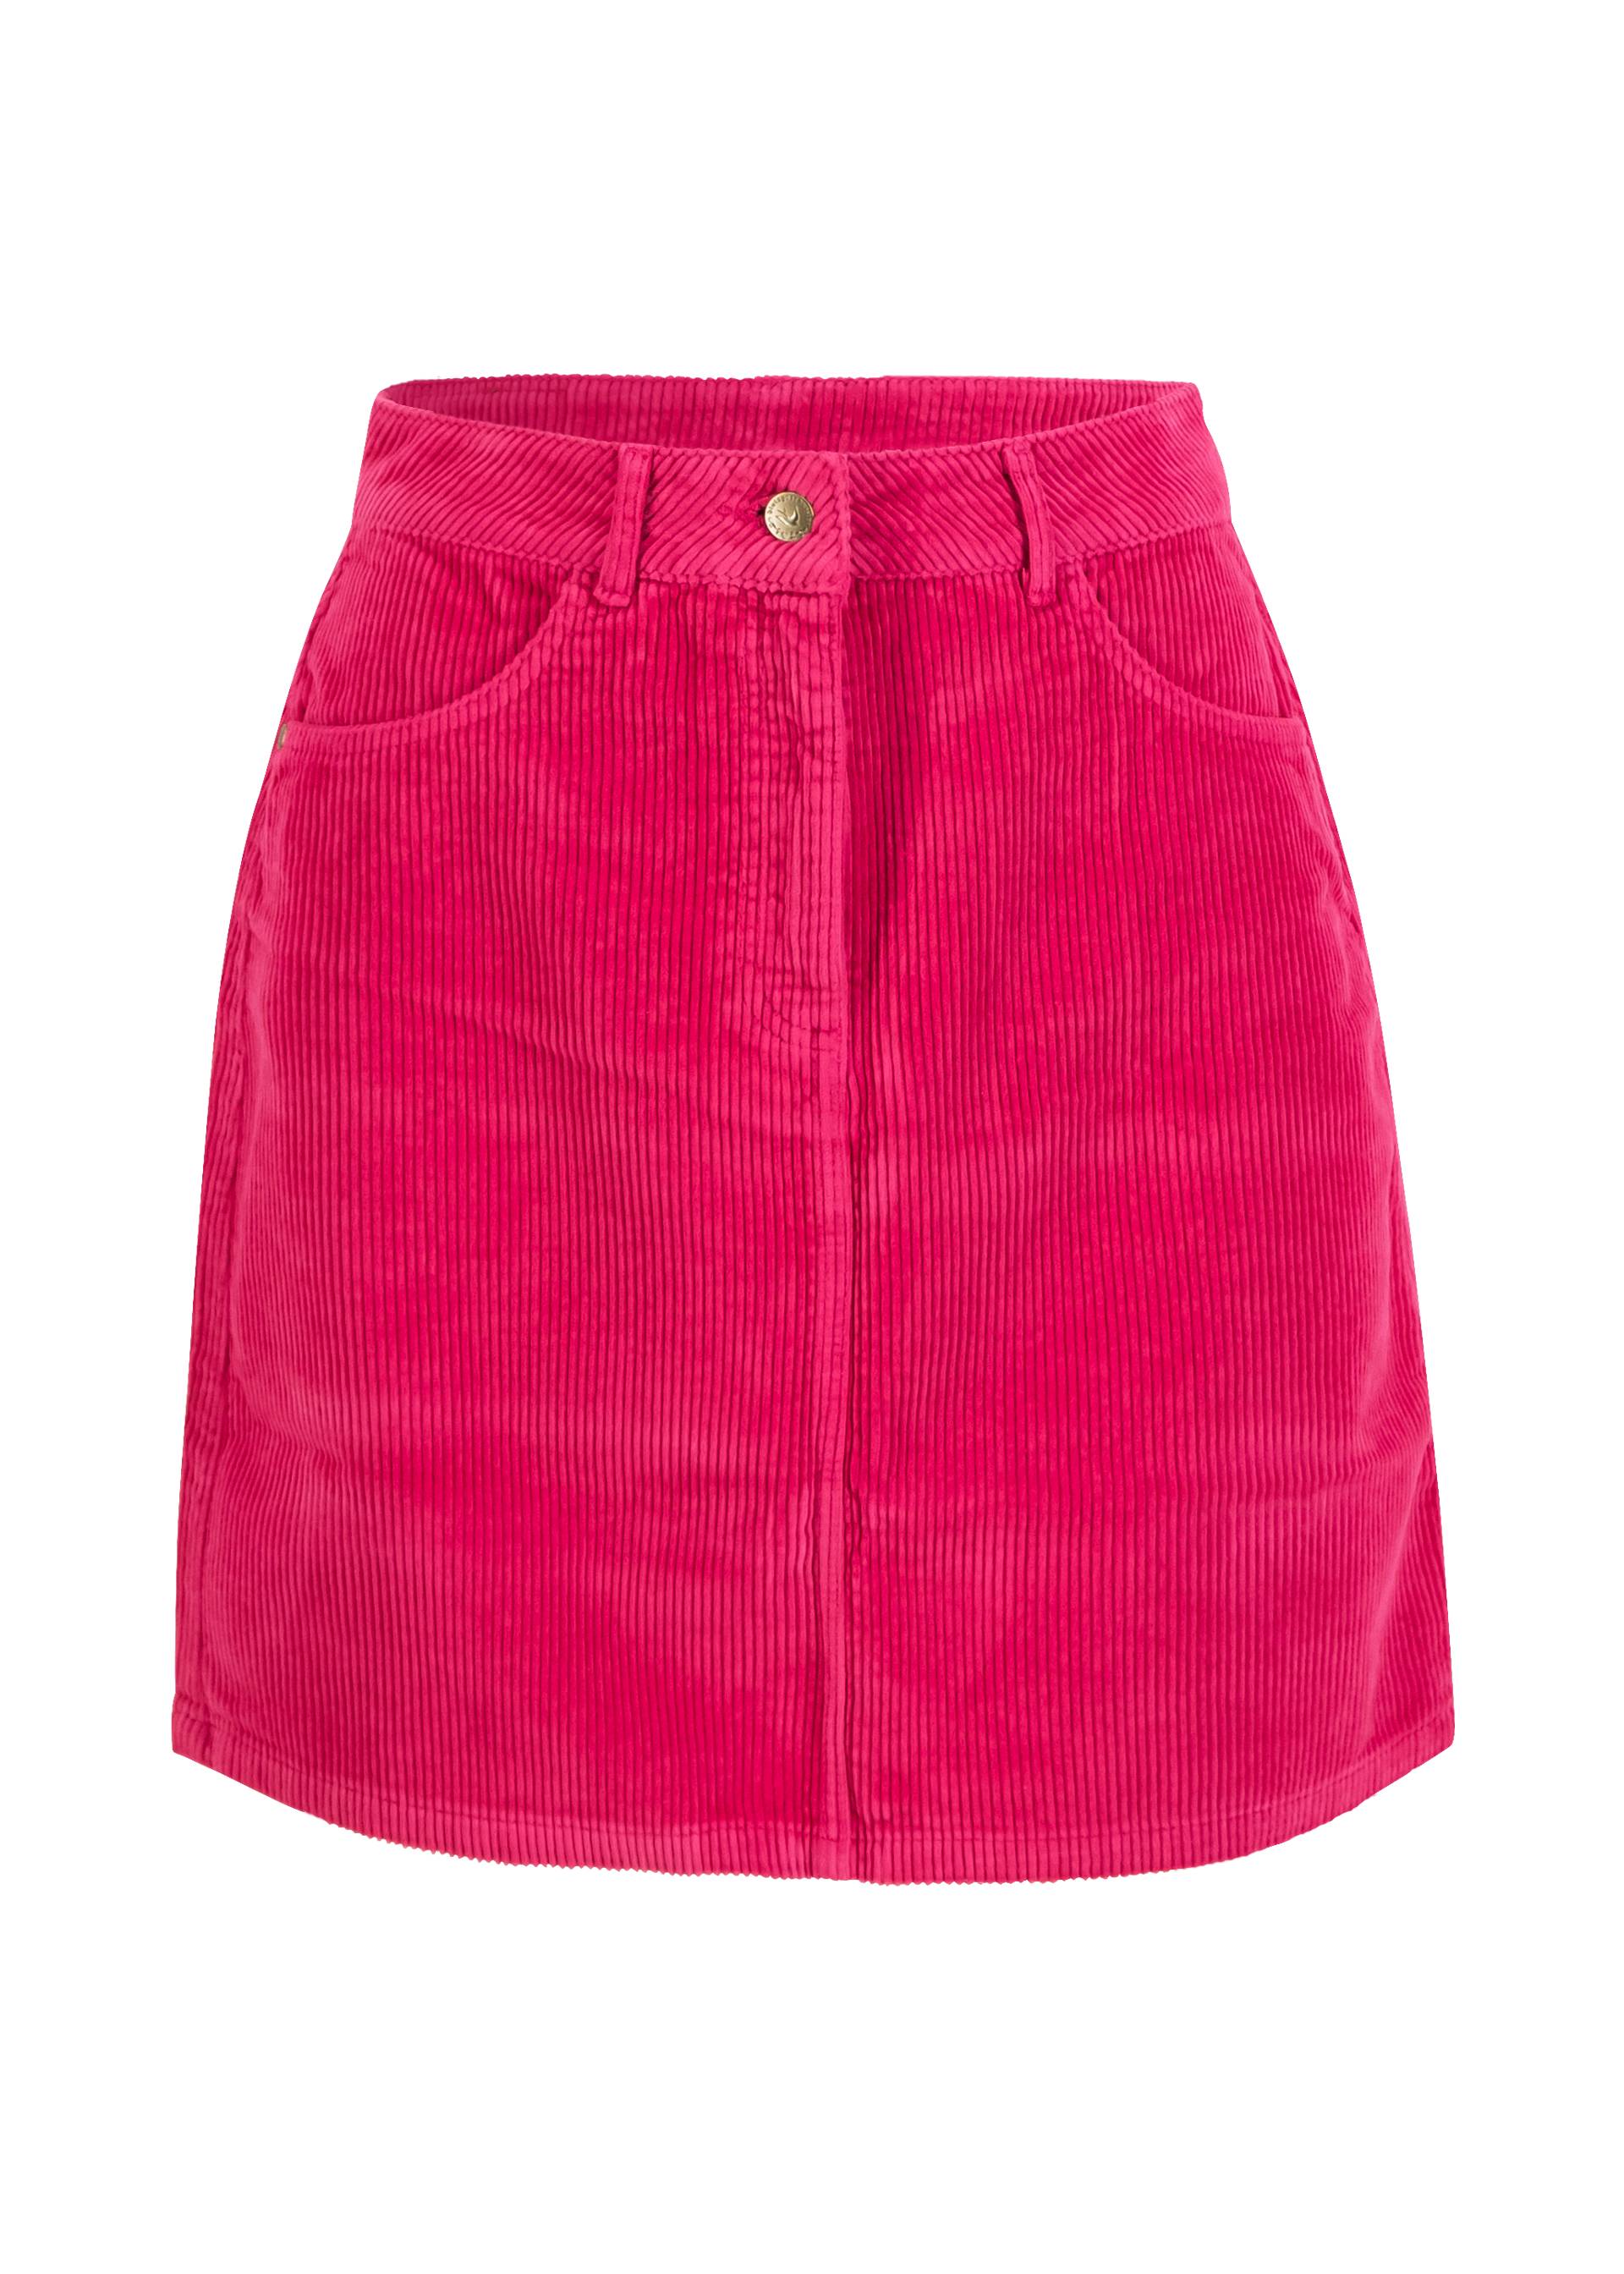 Corduroy Skirt The Corduroyal, kissing booth pink, Skirts, Pink